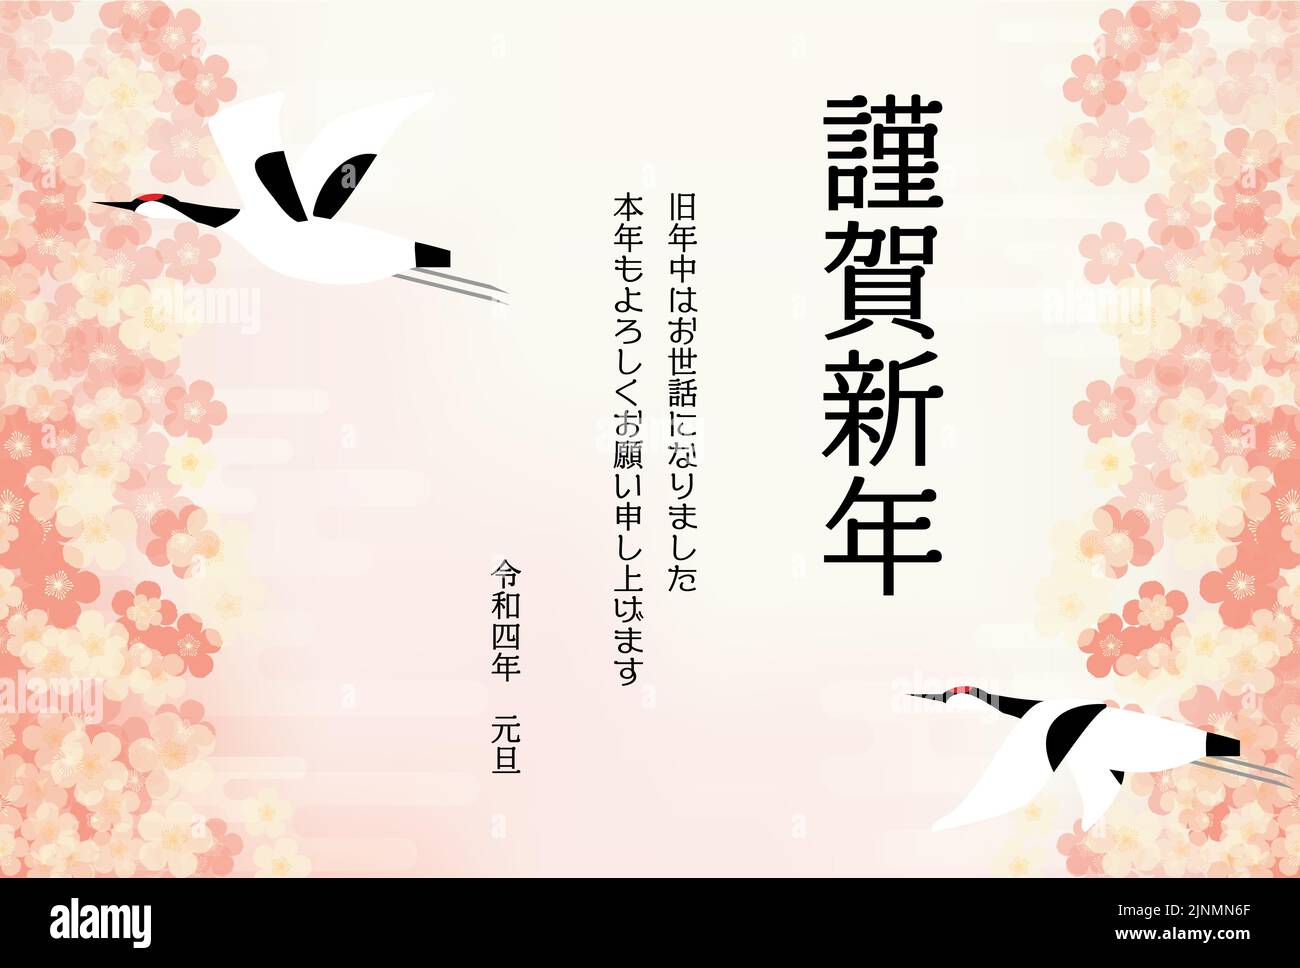 2022, carta di Capodanno, sfondo in stile giapponese di prugna e gru - traduzione: Felice anno nuovo, grazie ancora quest'anno Illustrazione Vettoriale